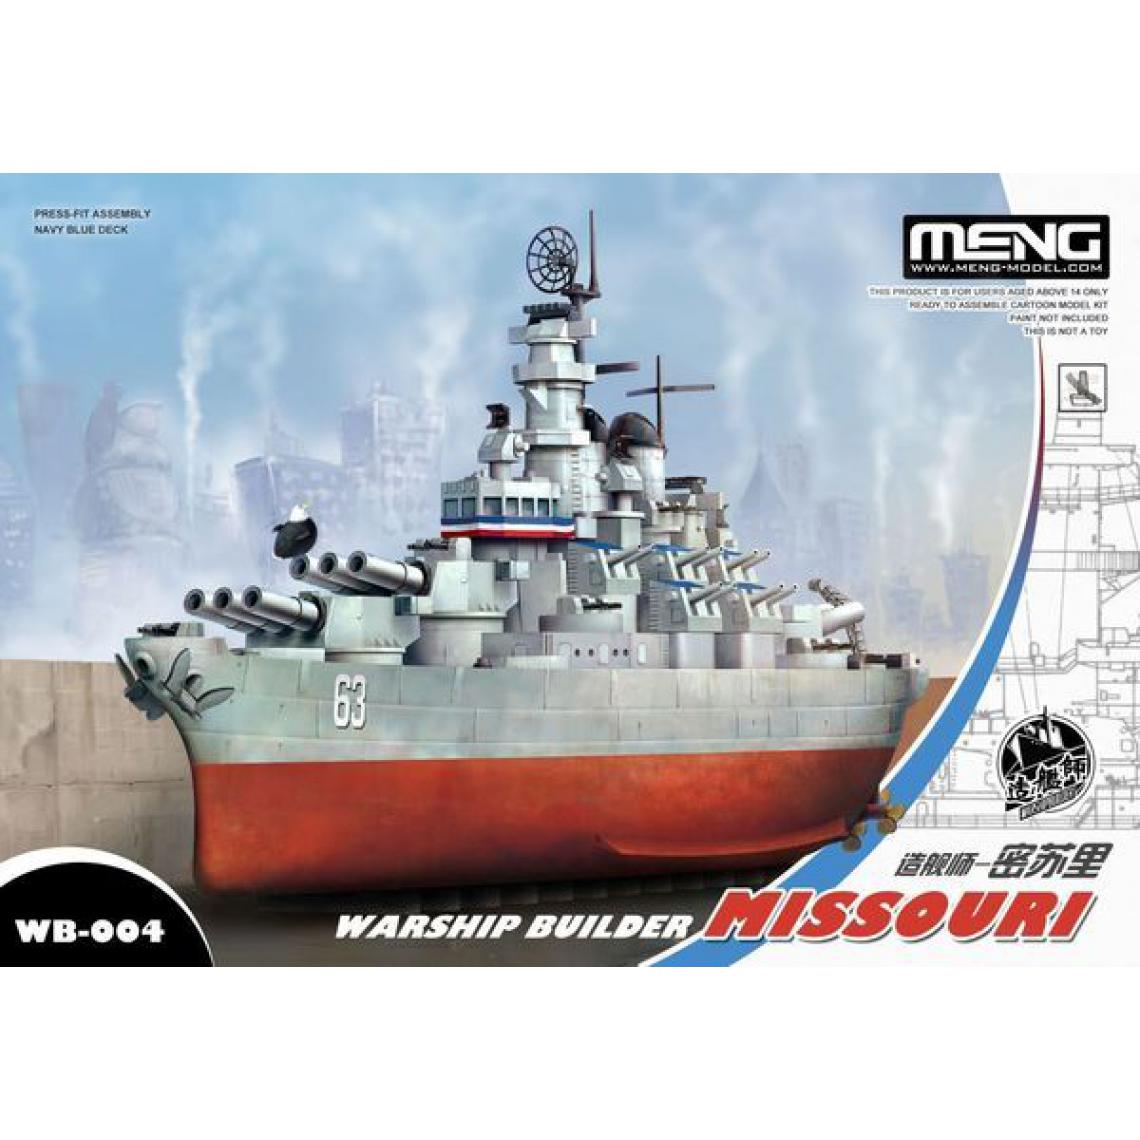 Meng - Warship Builder Missouri - e - MENG-Model - Accessoires et pièces